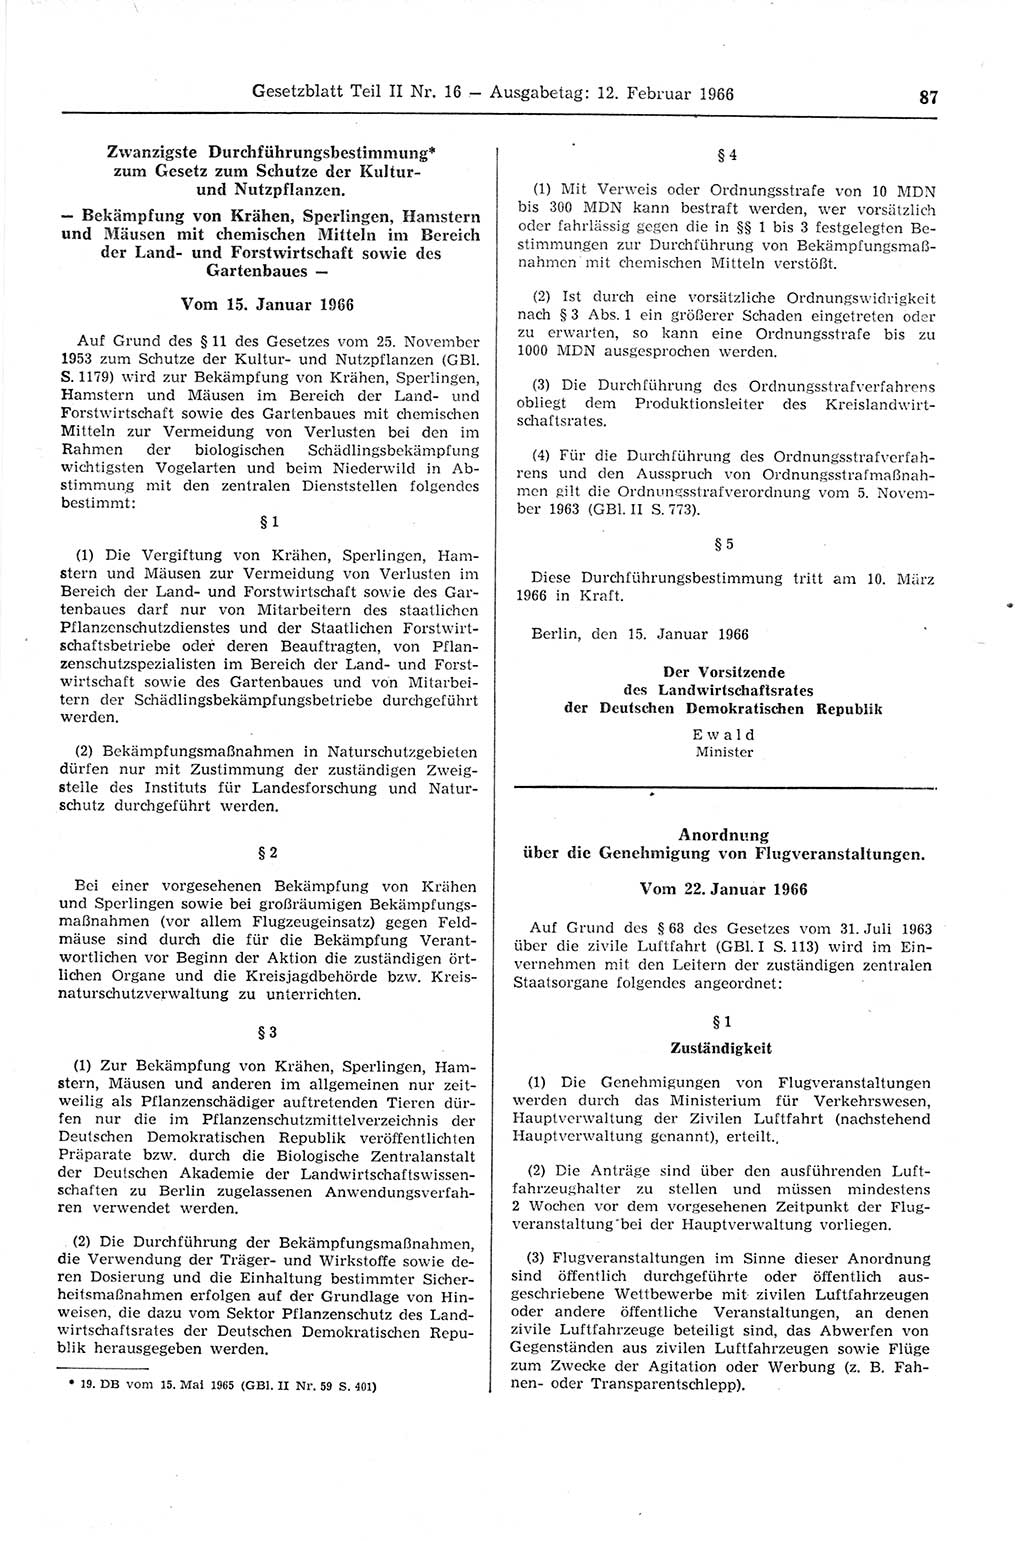 Gesetzblatt (GBl.) der Deutschen Demokratischen Republik (DDR) Teil ⅠⅠ 1966, Seite 87 (GBl. DDR ⅠⅠ 1966, S. 87)